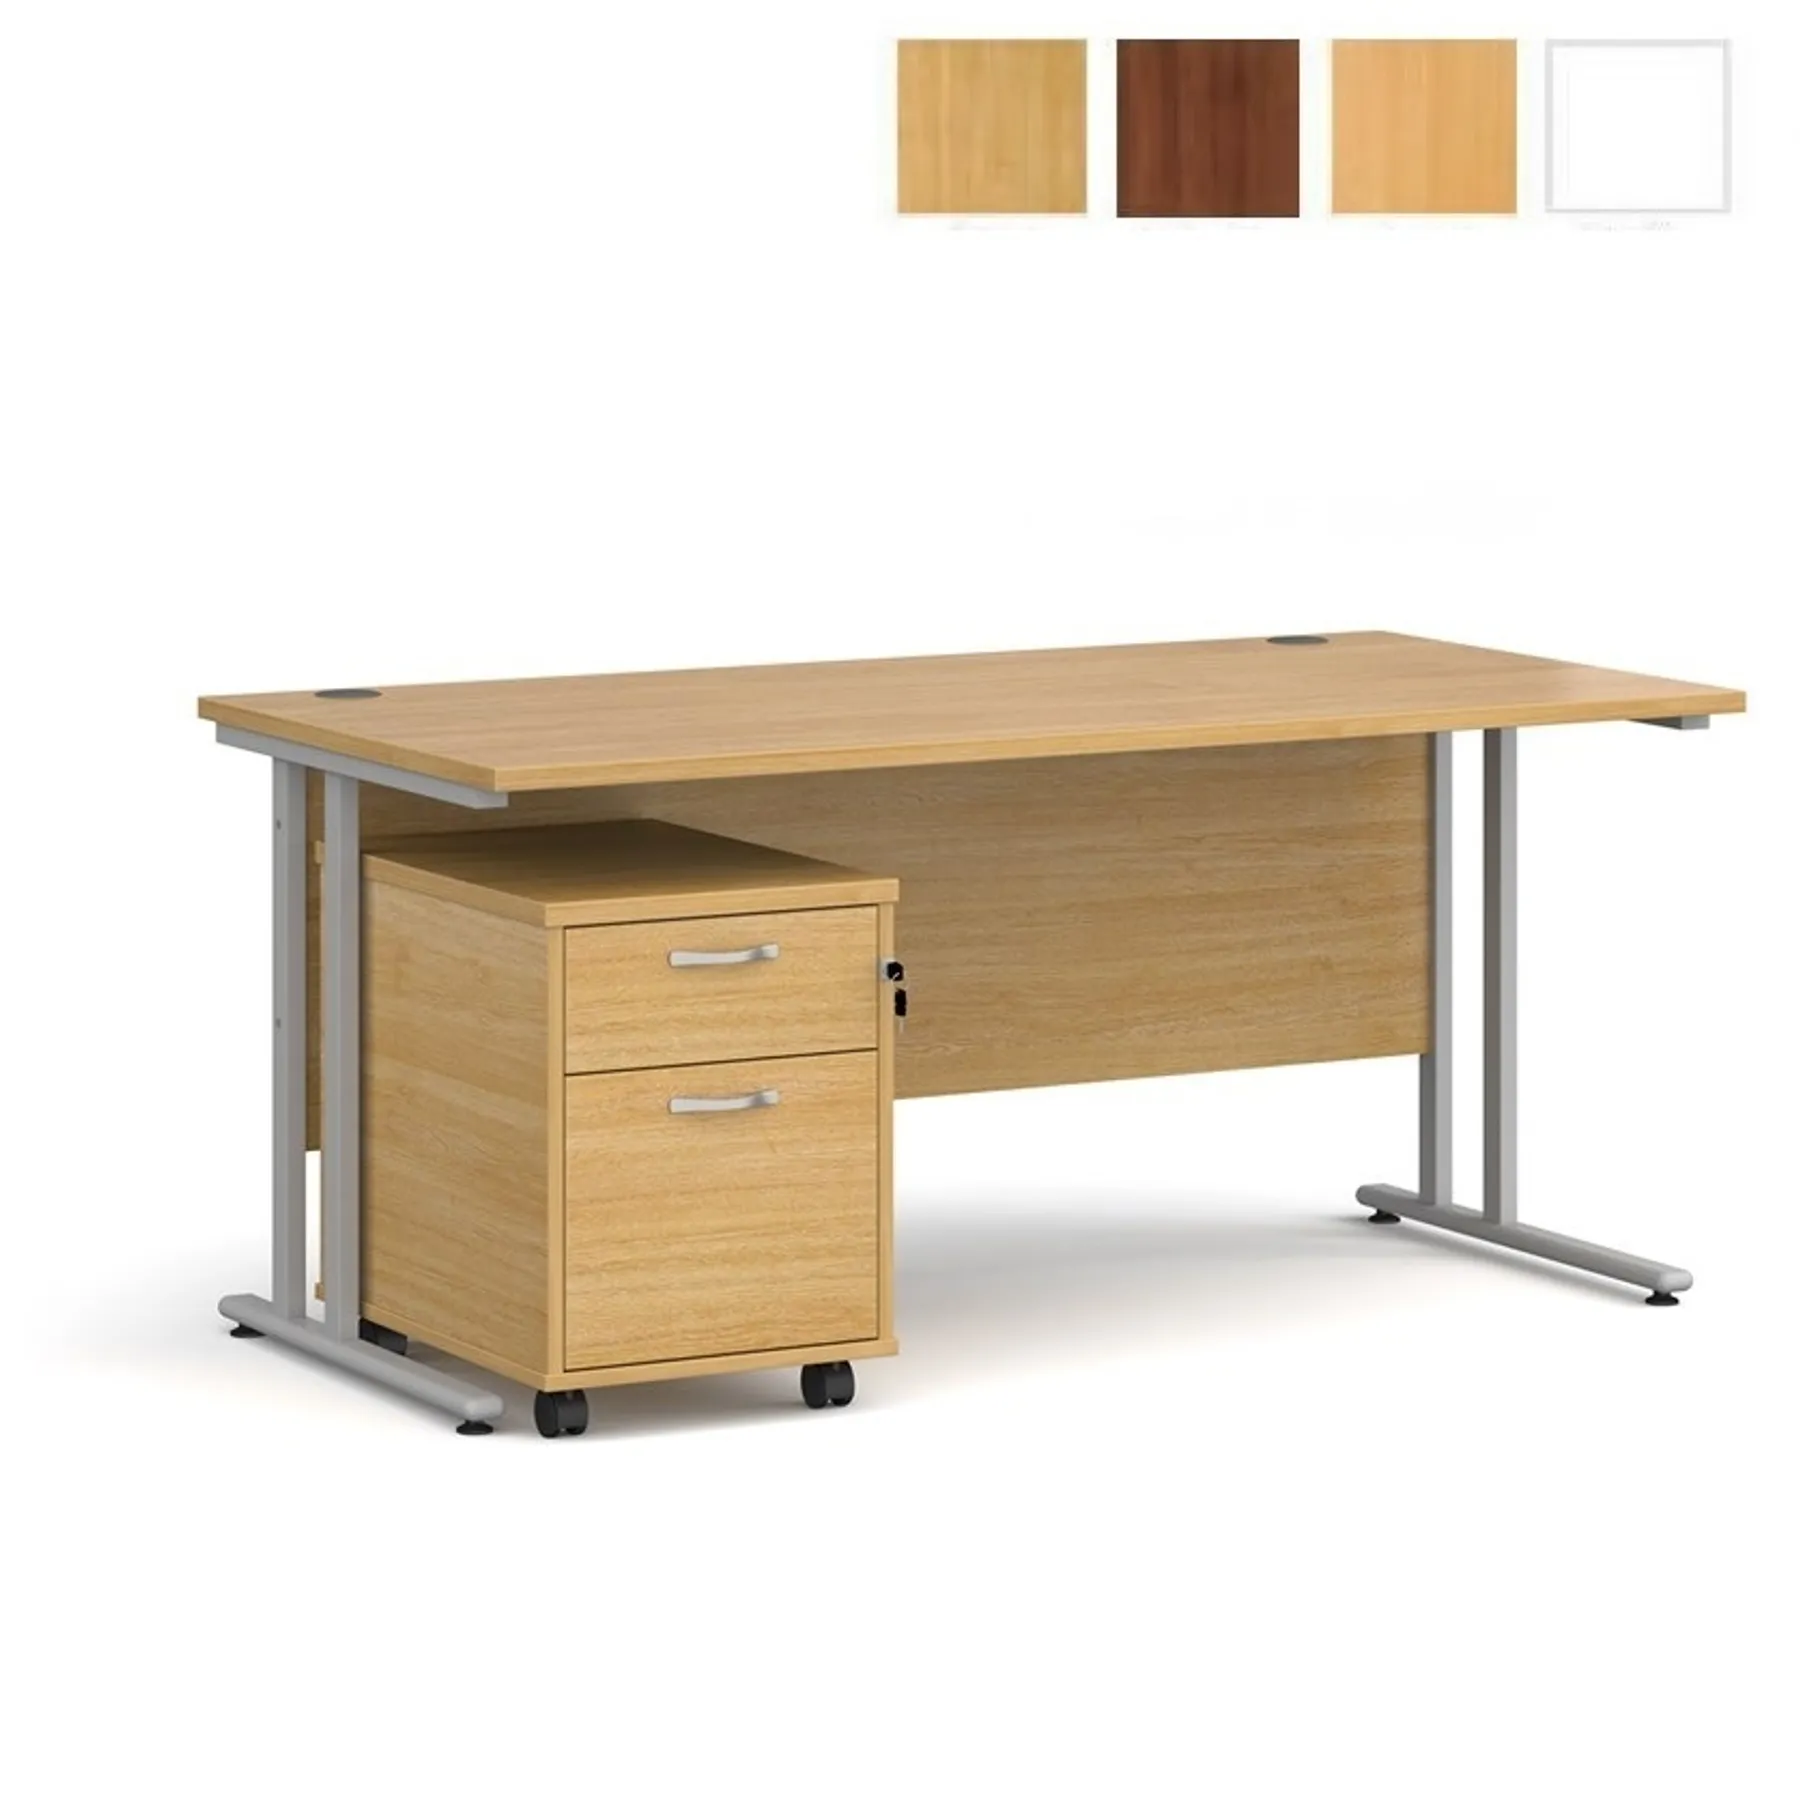 LOF Direct Dams Rectangular desk and pedestal bundle sbs216 oak beech white walnut desk